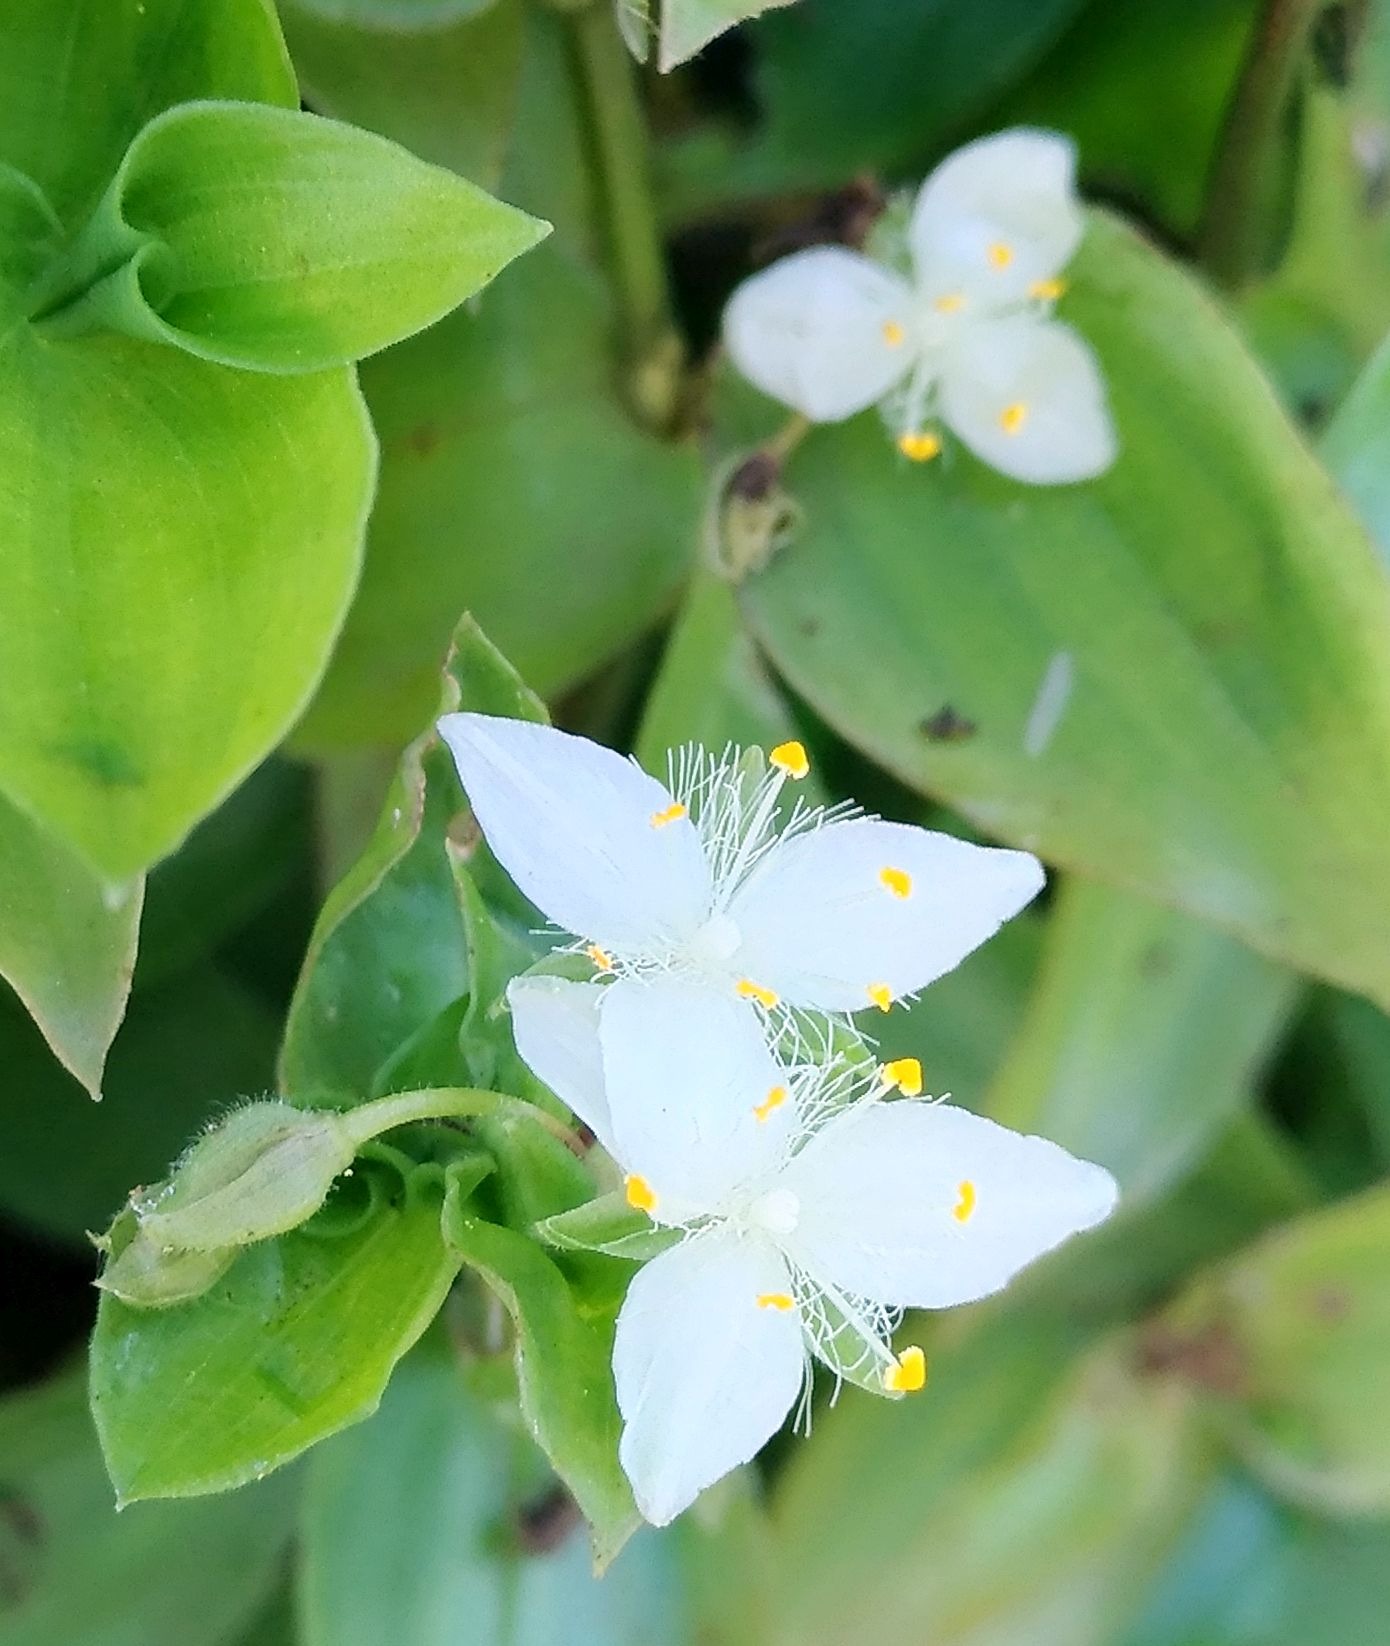 こころんグリーン 近くの空き地に トキワツユクサの白い花が幾つも咲いていました 白い3枚の花びらに 長い雄しべと雌しべが特徴的です この時期になって 花数が増えてきているようです トキワツユクサ 白い花 雄しべ 雌しべ 初夏の花 初夏